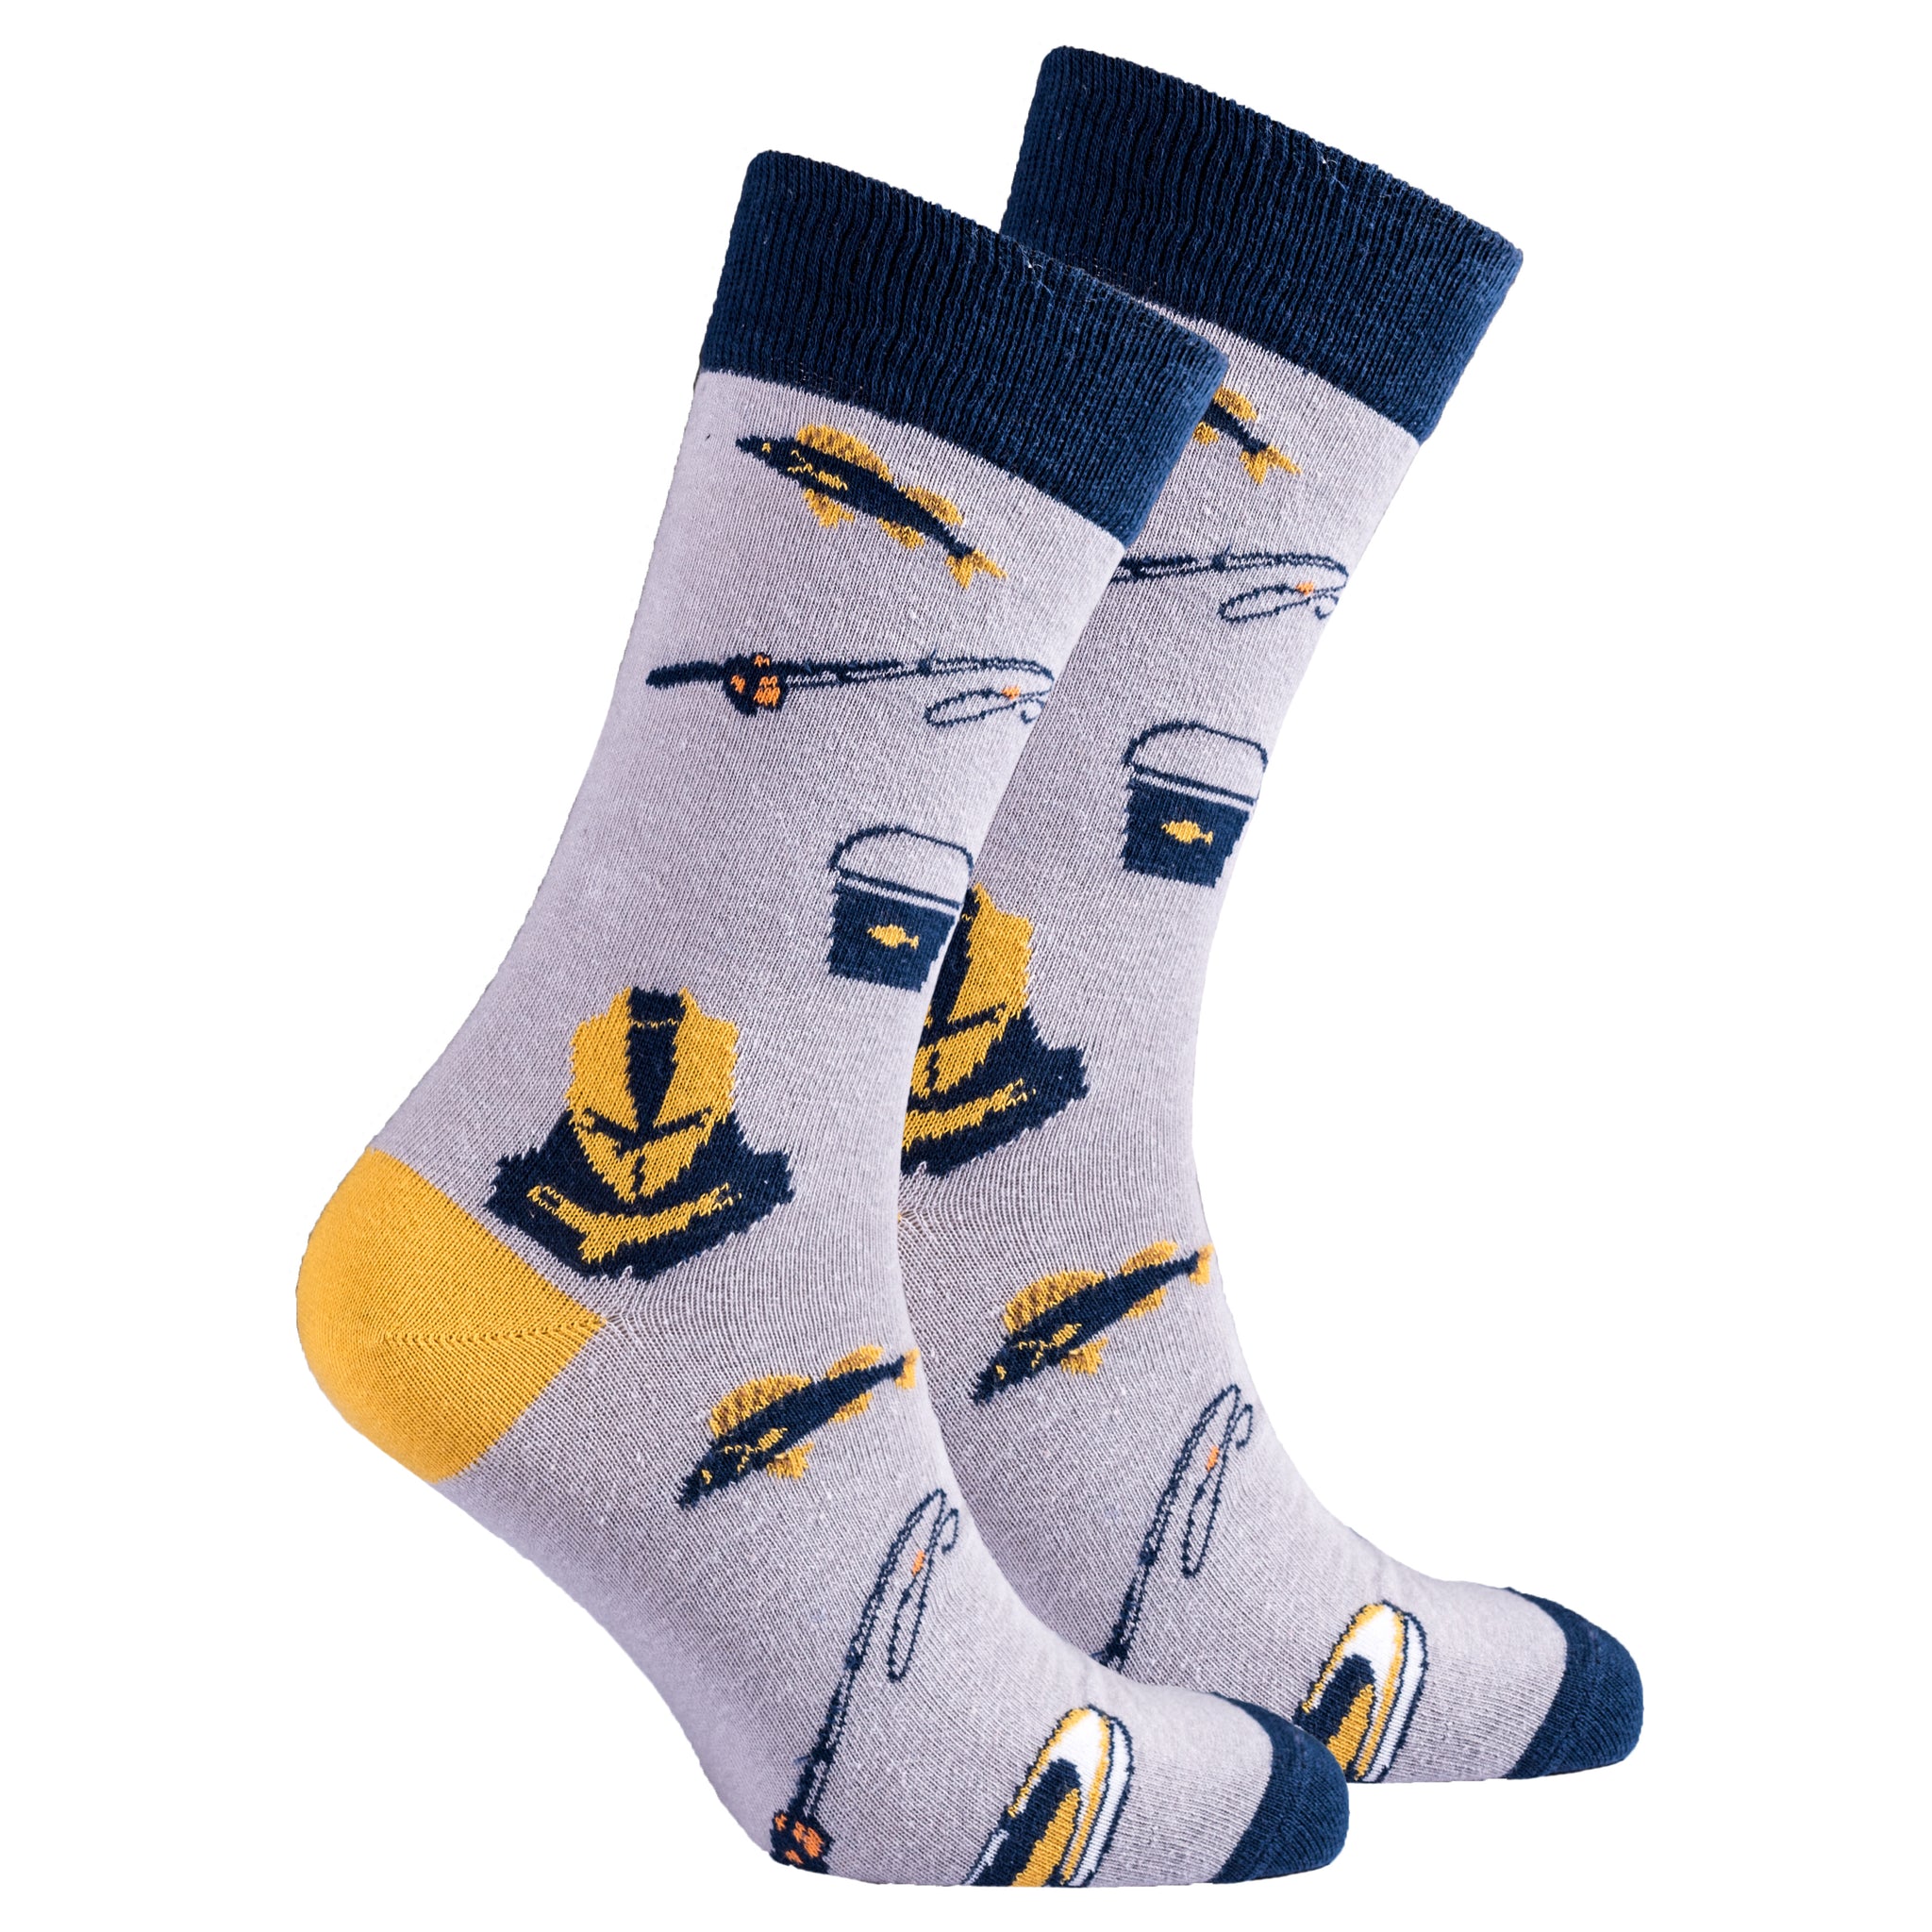 Men's Fishing Socks - Socks n Socks